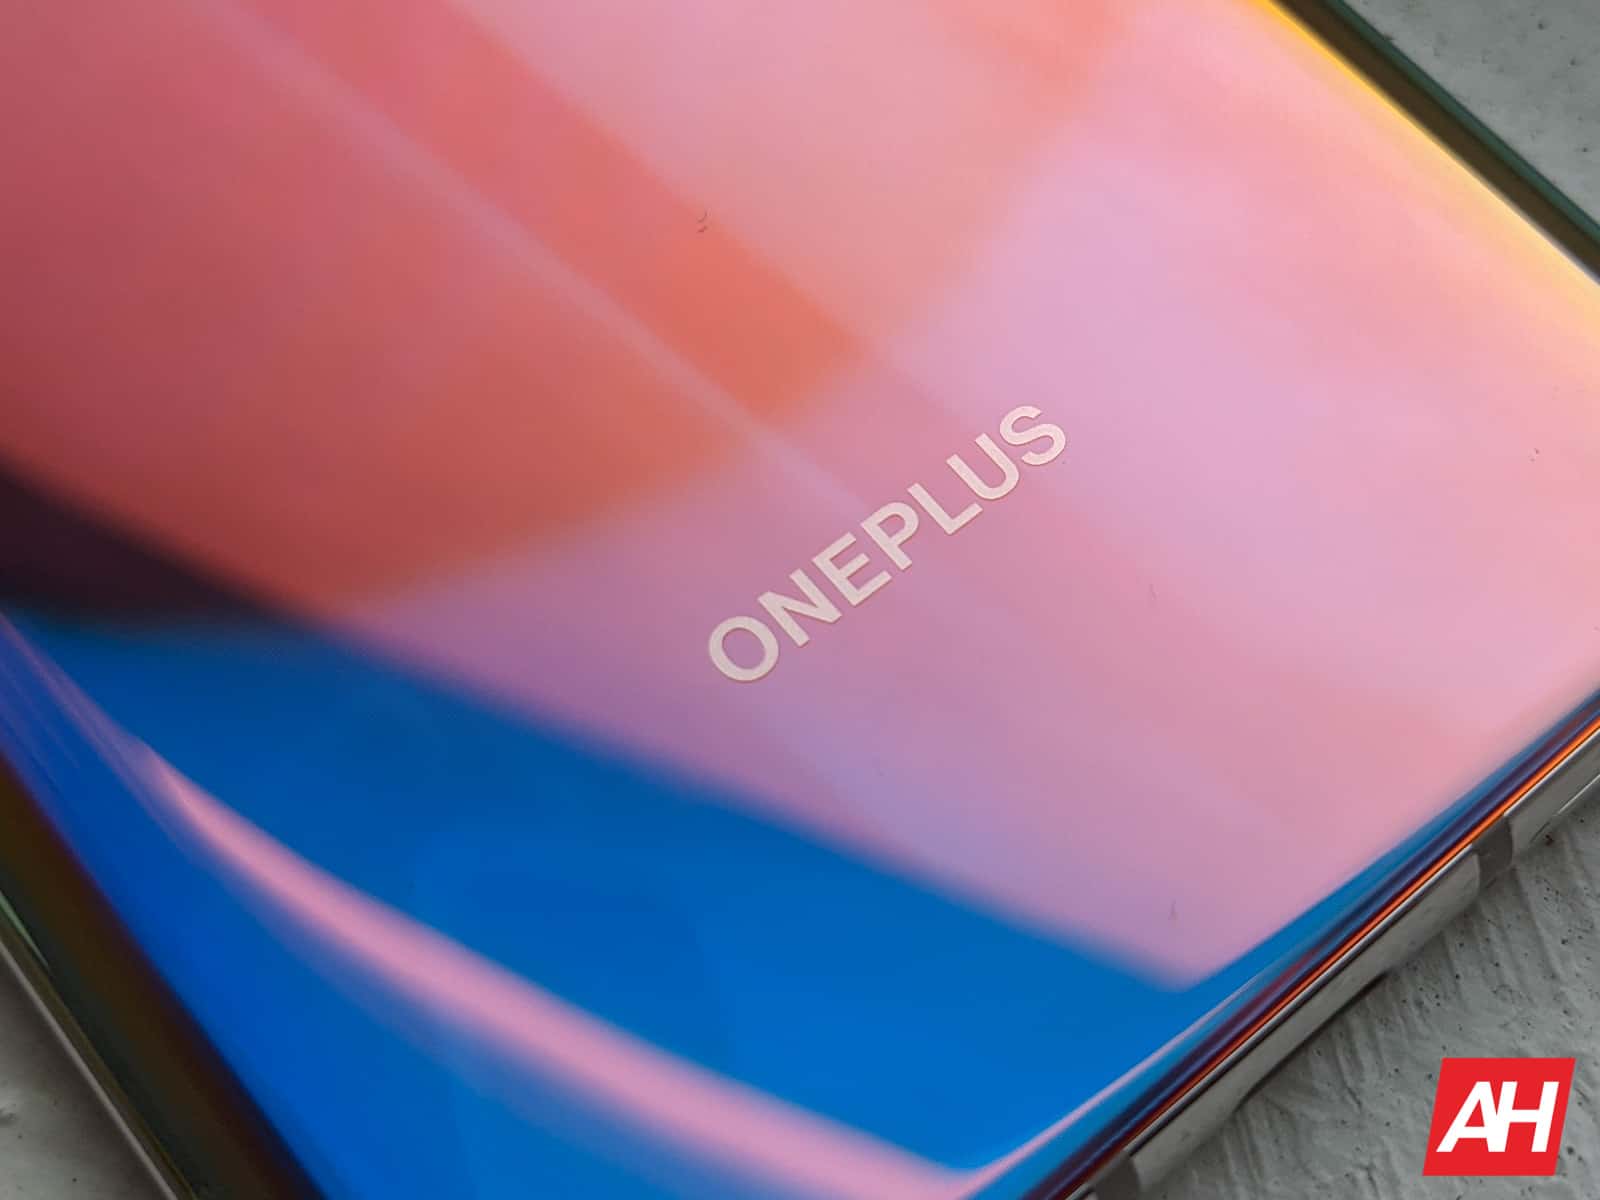 Модель OnePlus Nord 2 с 12 ГБ оперативной памяти подтверждена в Geekbench